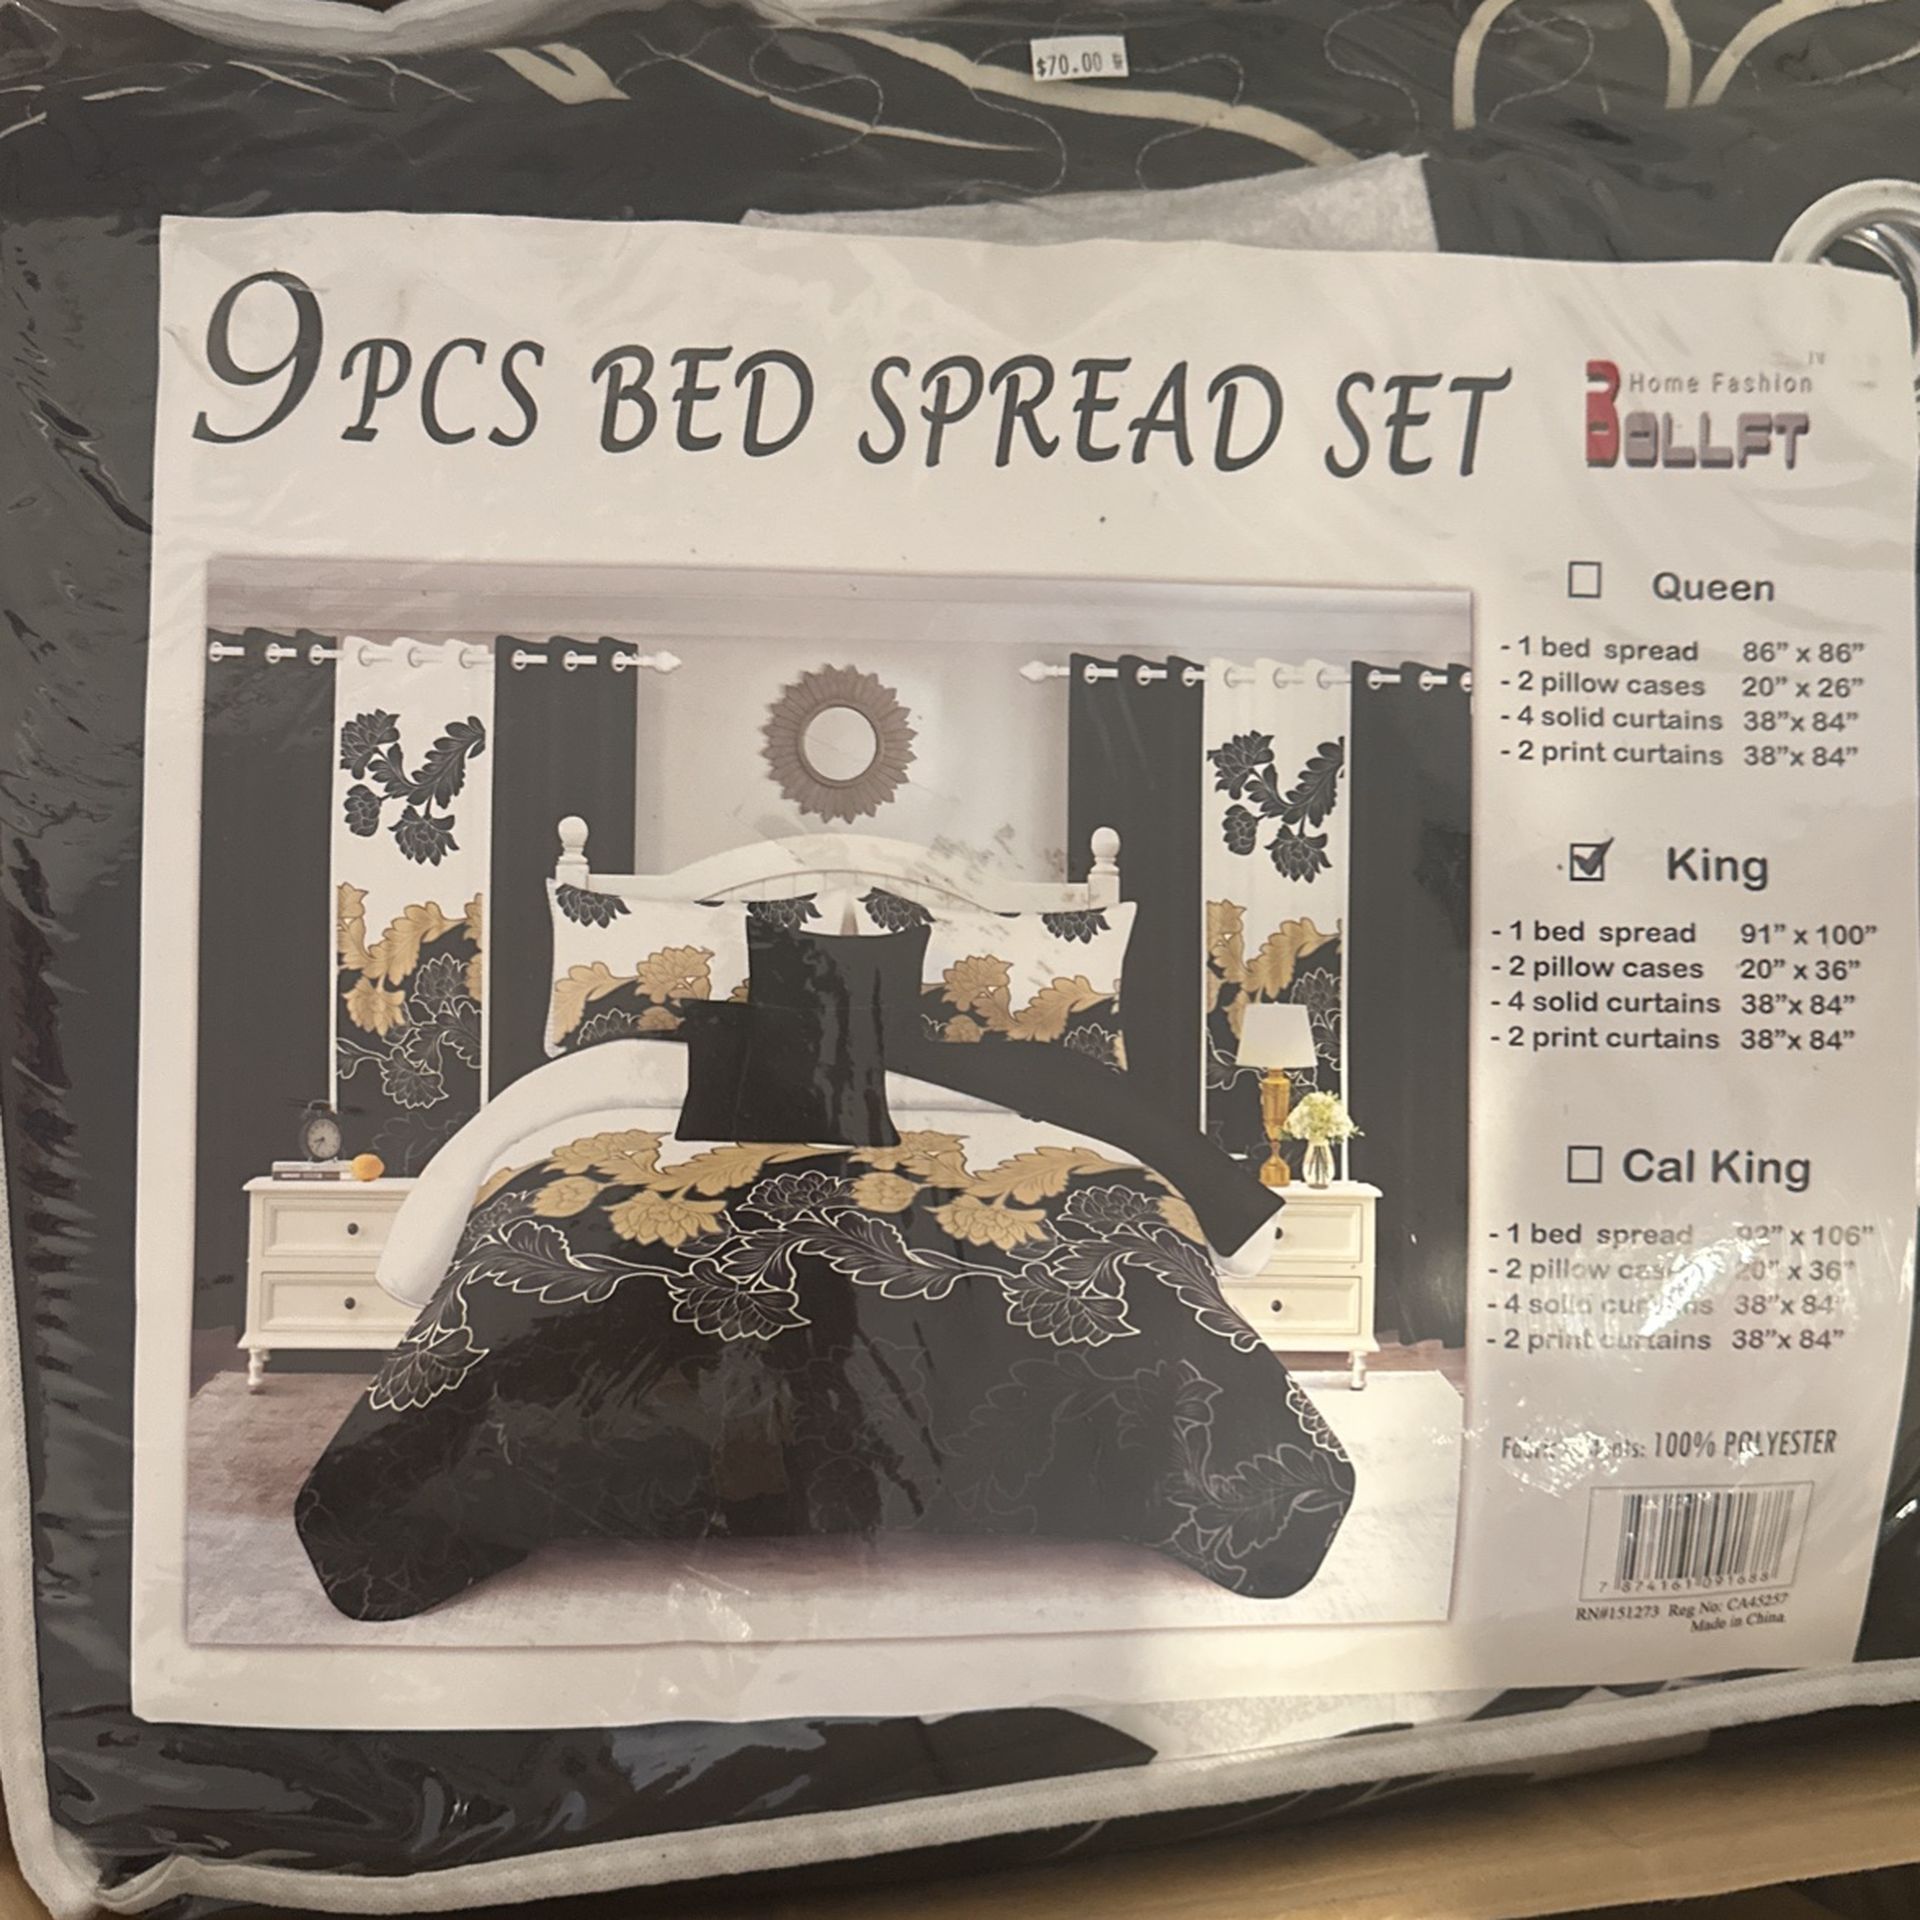 9pcs bed spread set 